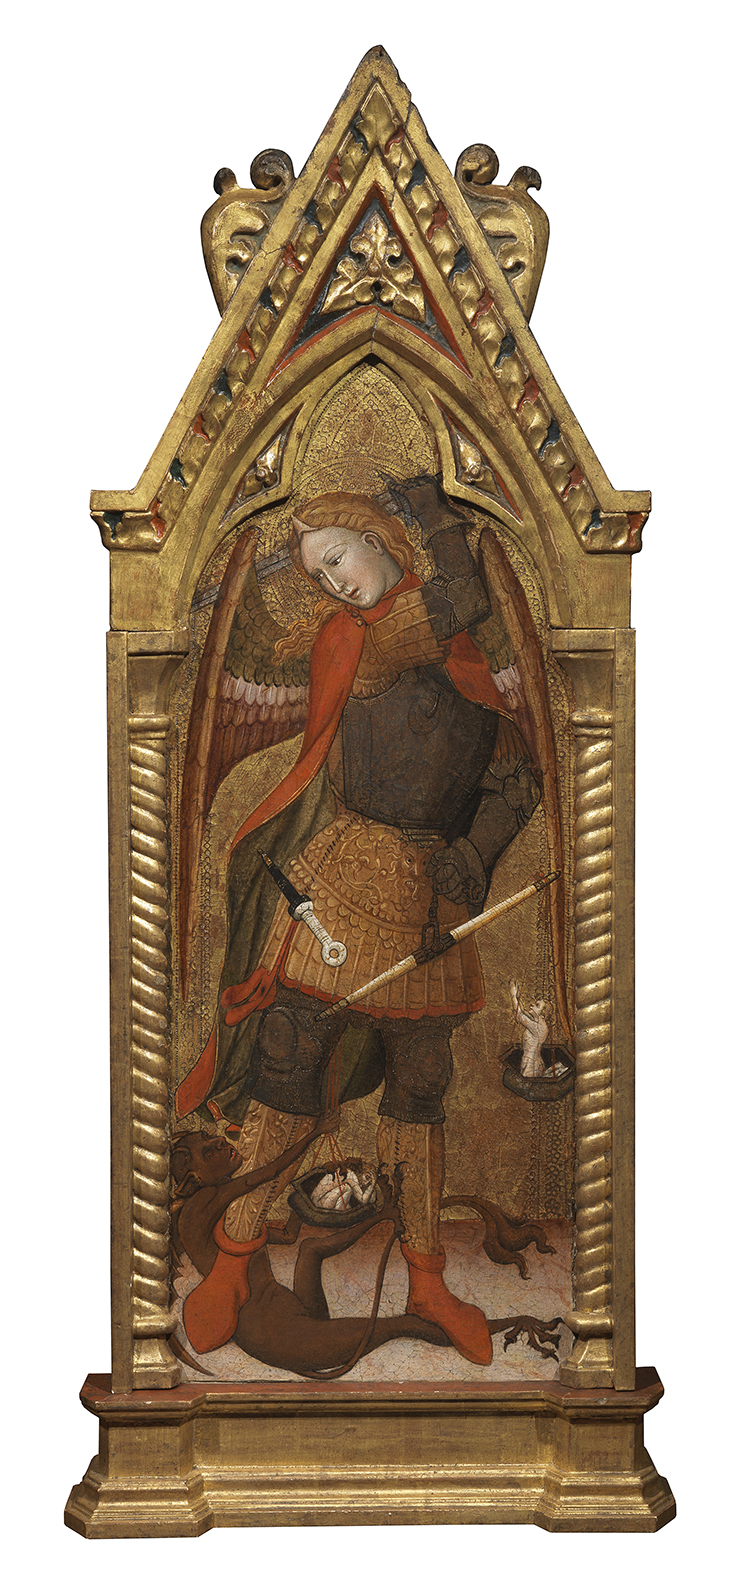 Andrea de Bartoli (attivo ca. 1350 – 1377), L’Arcangelo Michele, XIV secolo, tempera su tavola, 115 x 48 cm